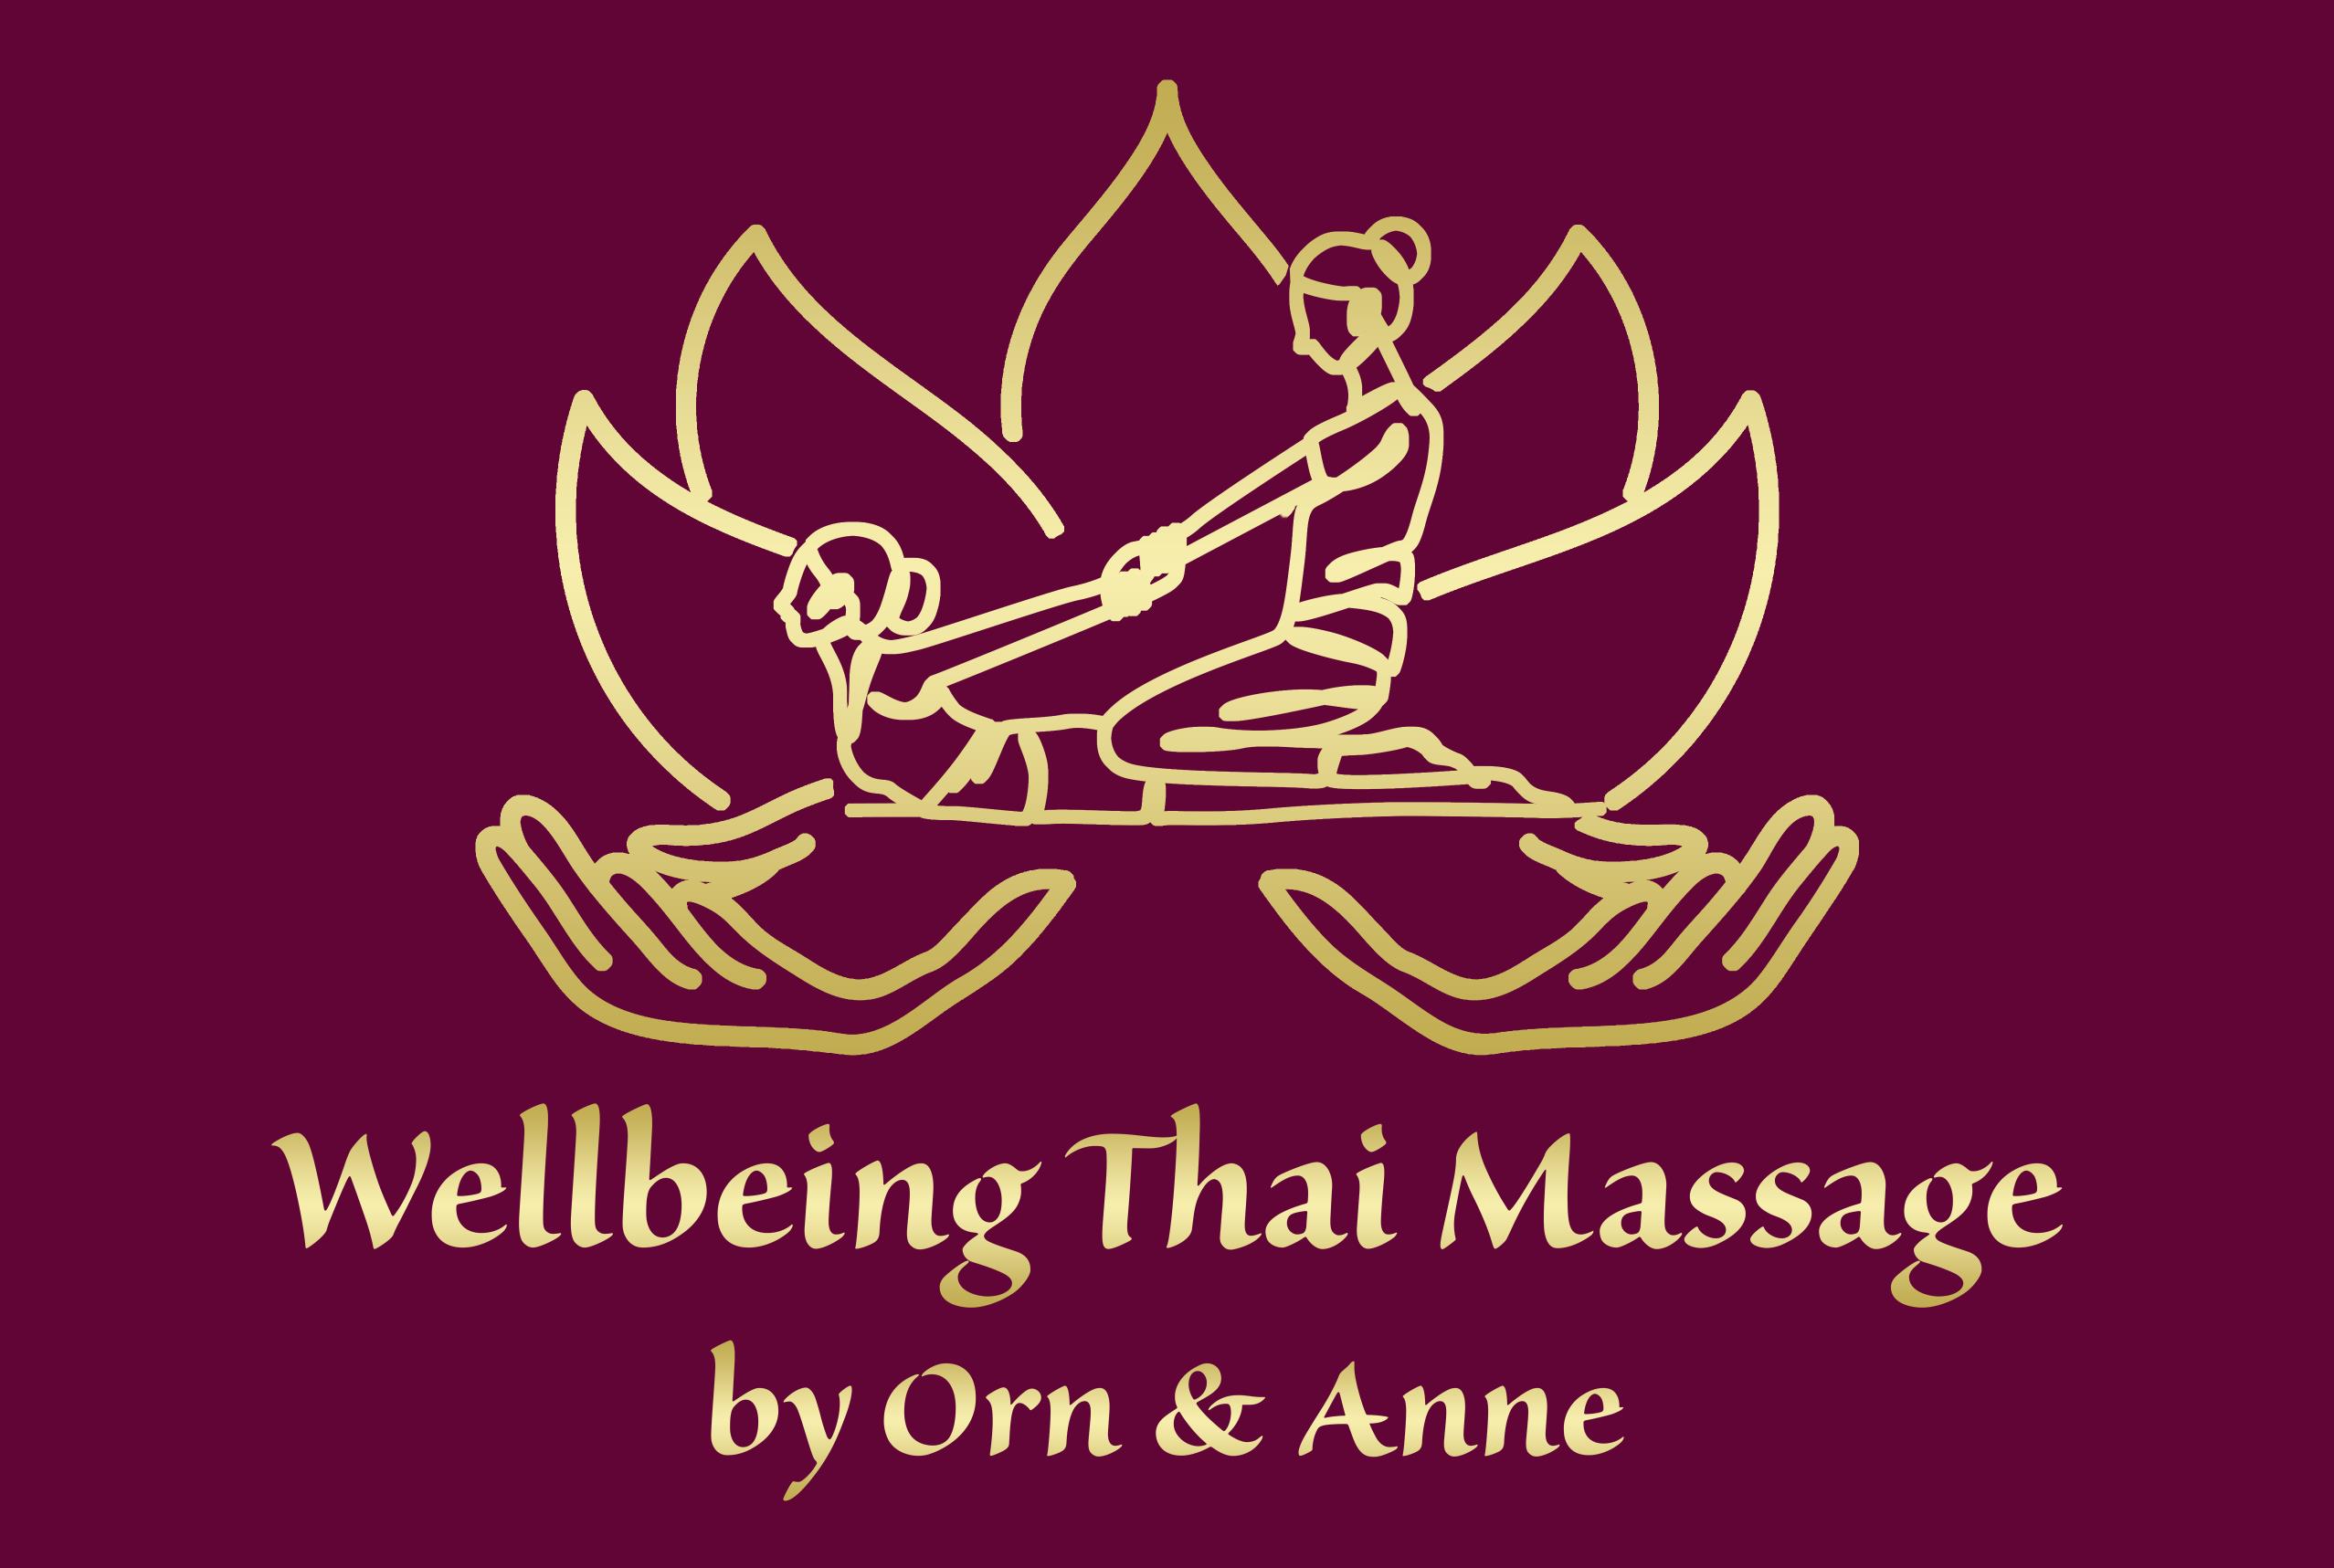 Wellbeing Thai Massage by Orn & Anne